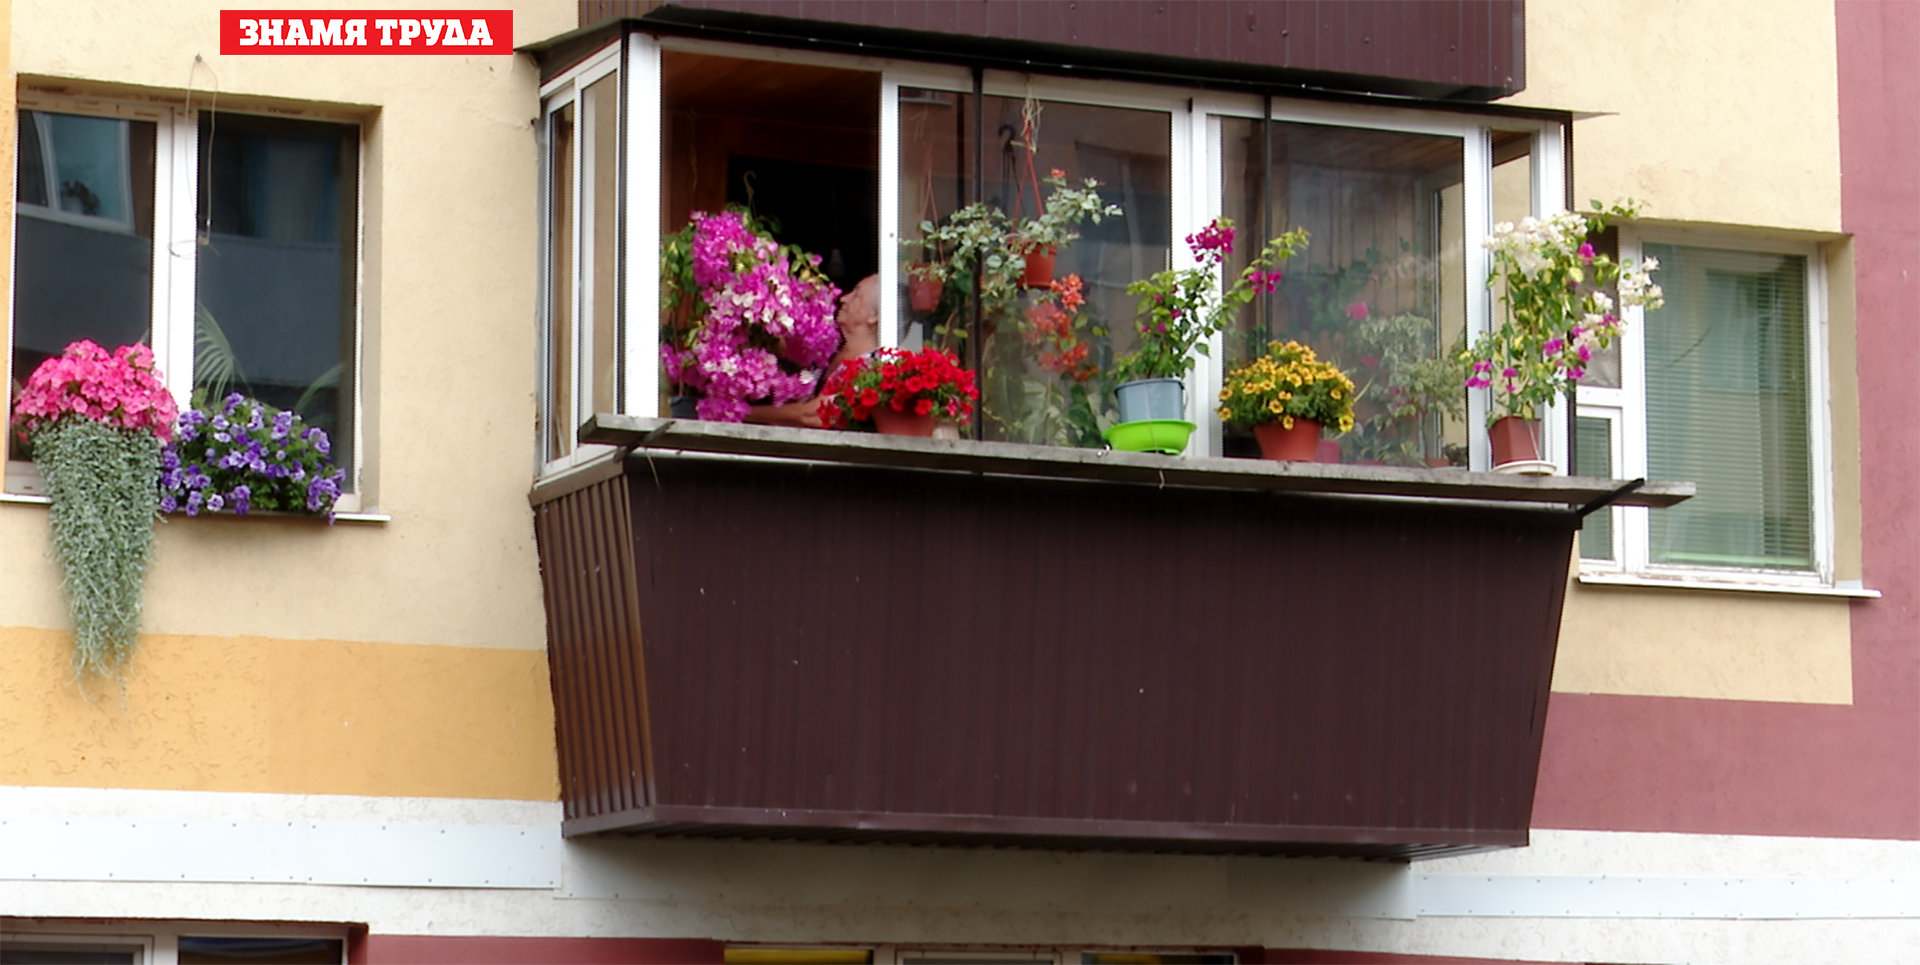 Удивительное рядом: жительницы Альметьевска своими руками создают благоухающие мини-сады